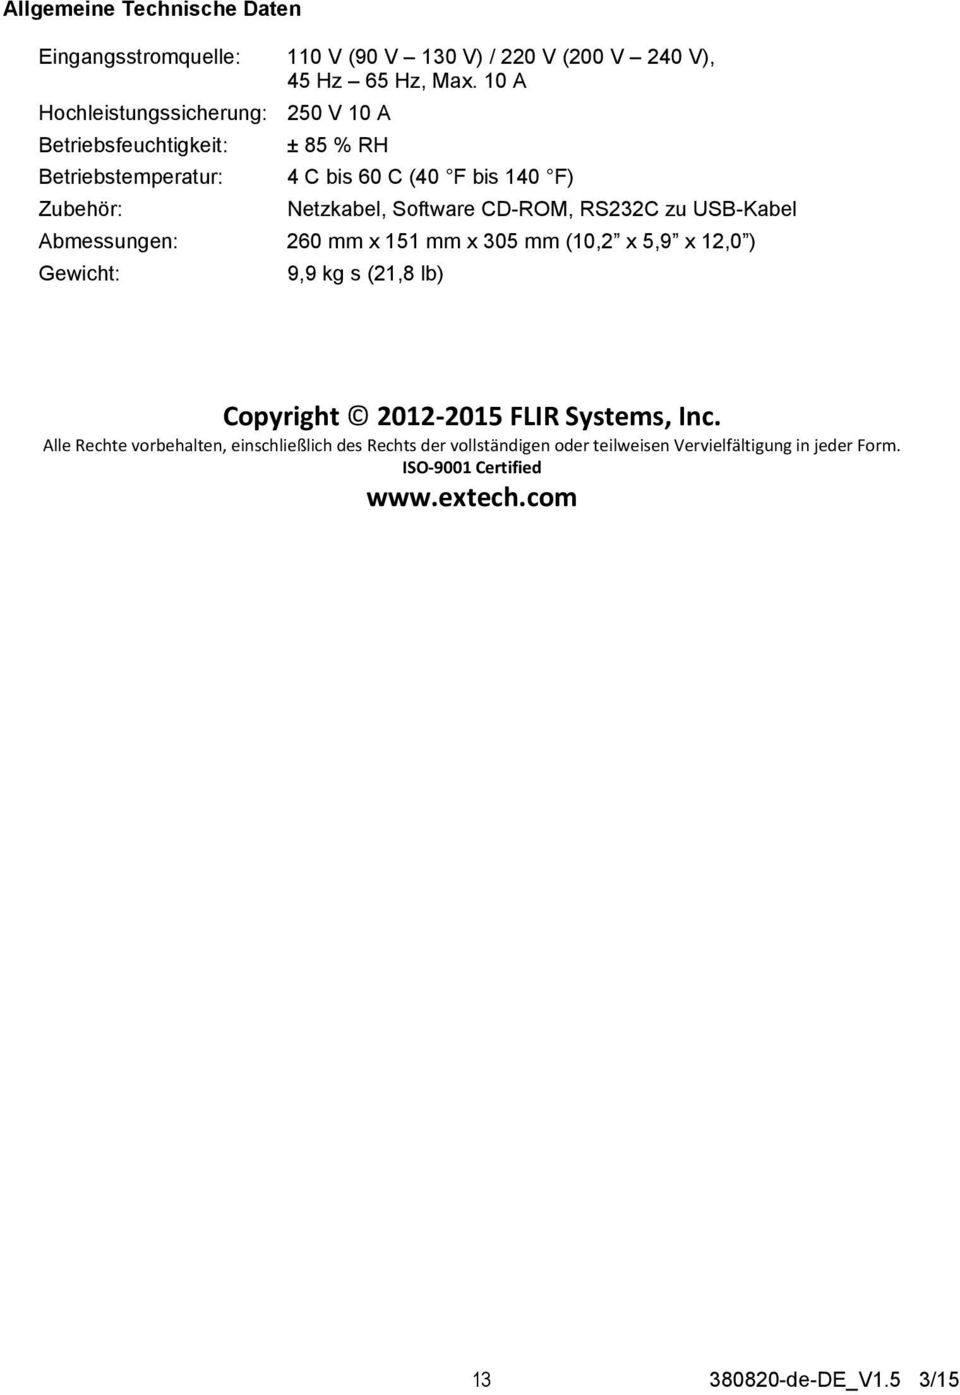 Software CD-ROM, RS232C zu USB-Kabel Abmessungen: 260 mm x 151 mm x 305 mm (10,2 x 5,9 x 12,0 ) Gewicht: 9,9 kg s (21,8 lb) Copyright 2012